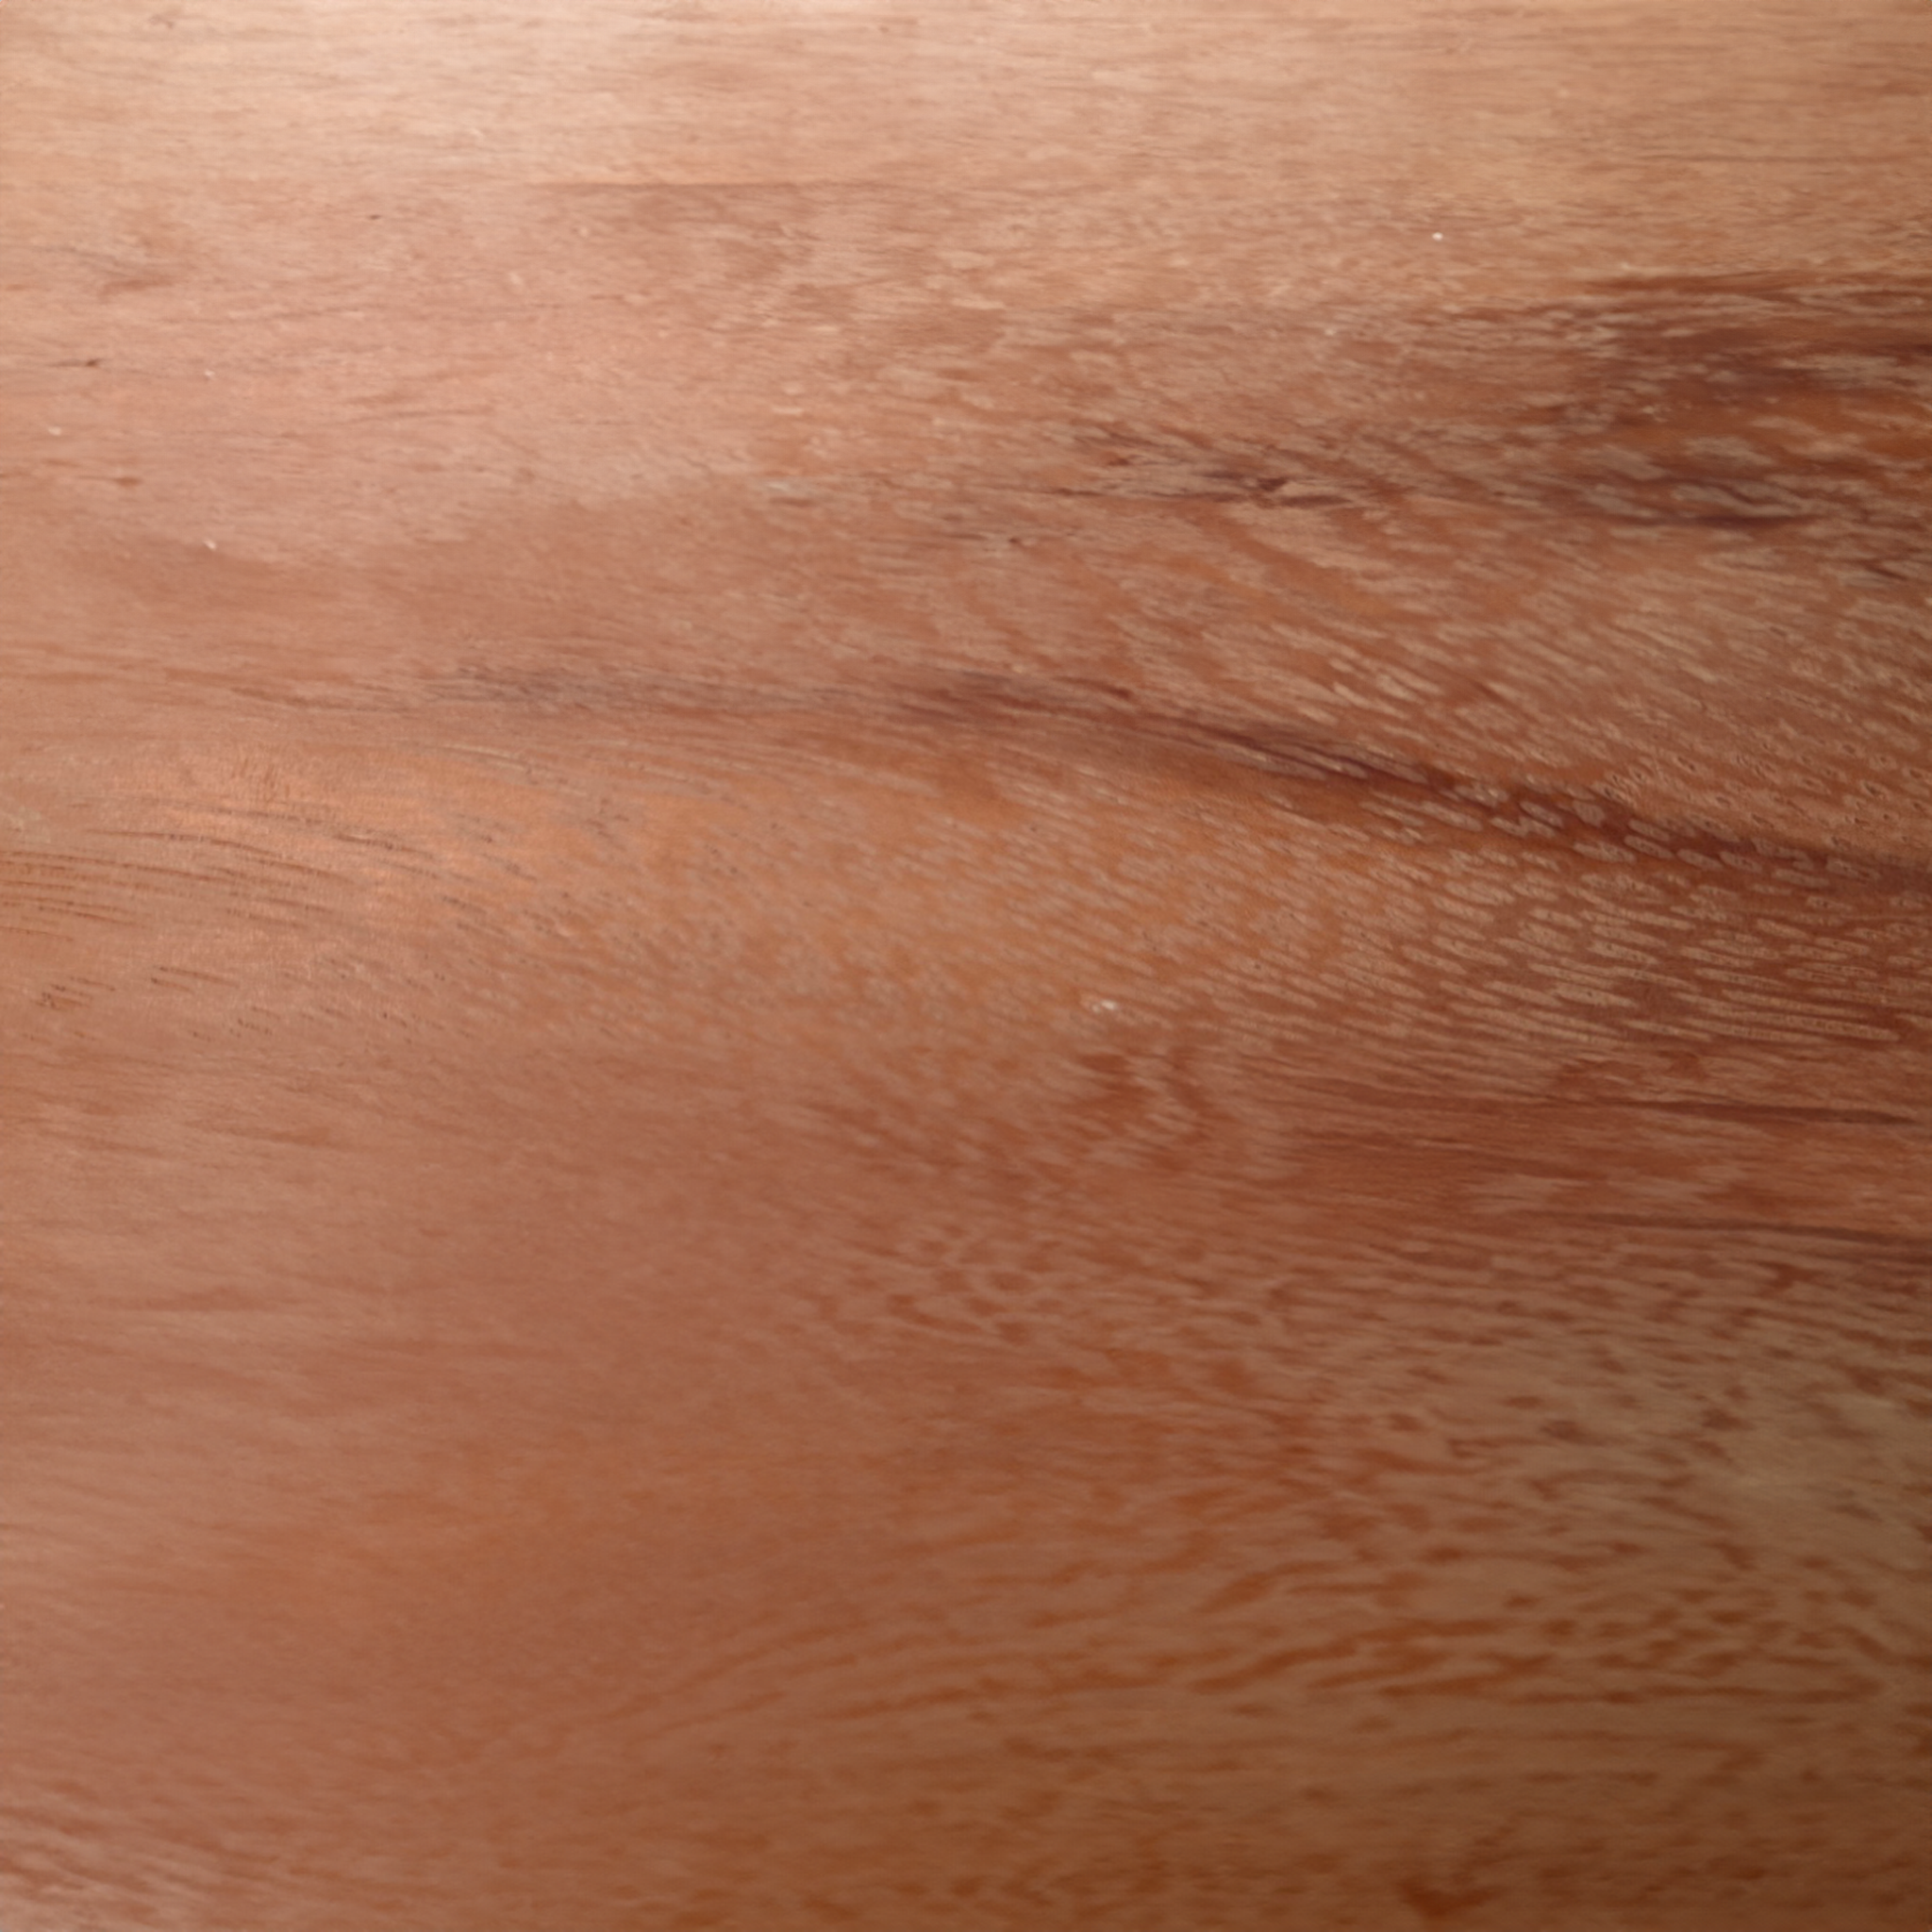 Ebiara nachhaltige Holzpflege aus 100% natürlichen Inhaltsstoffen. studio moreandless